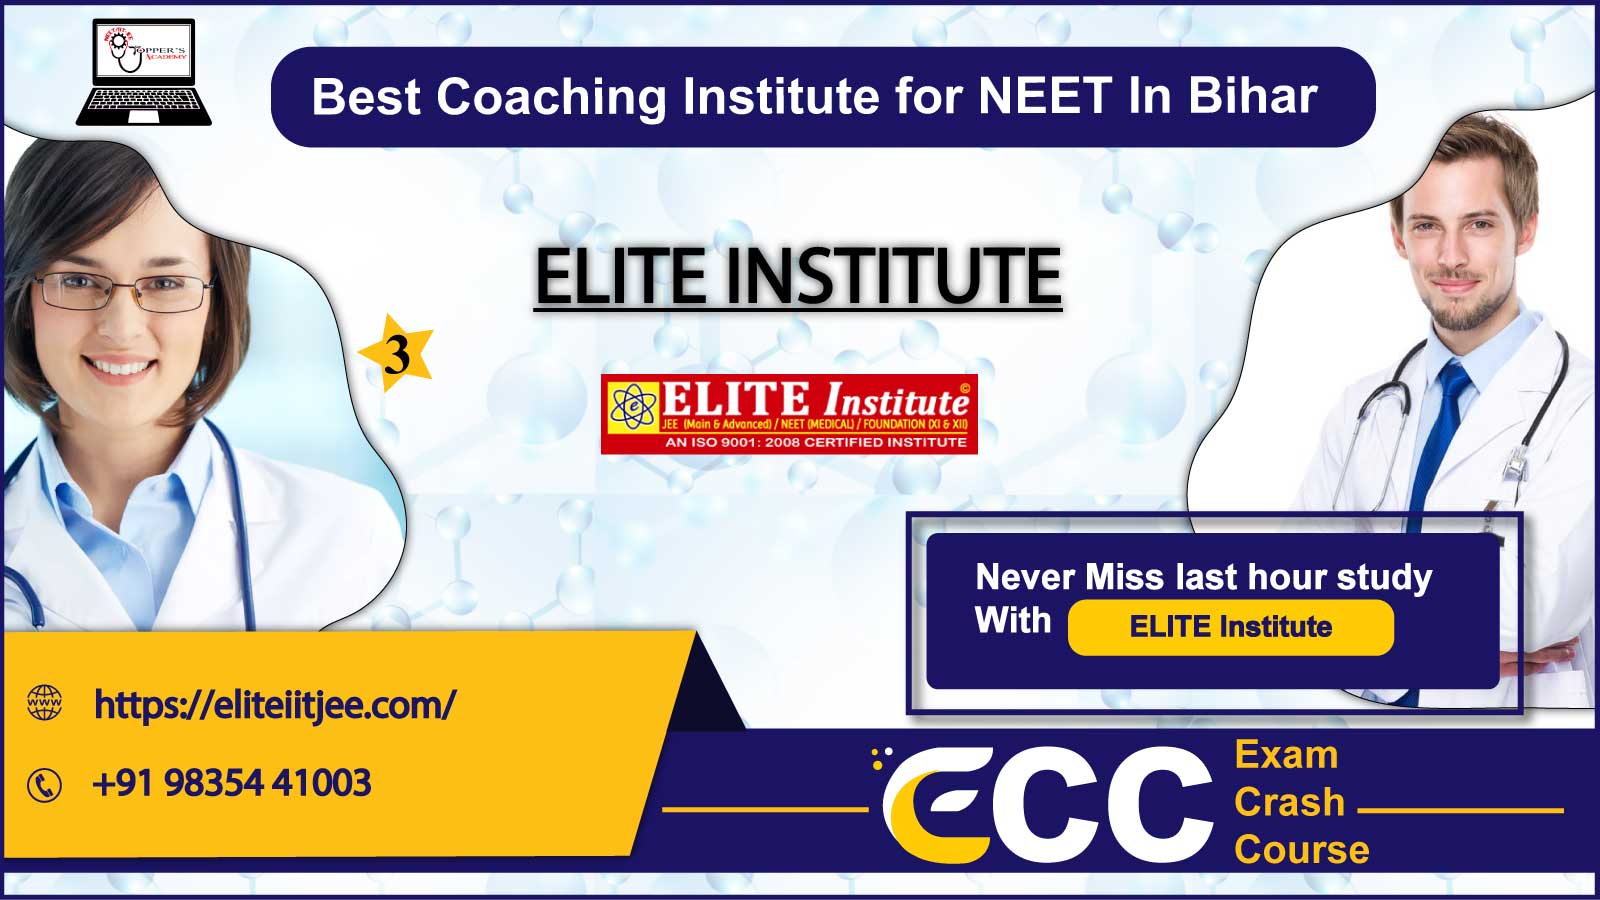 ELITE Institute in Bihar